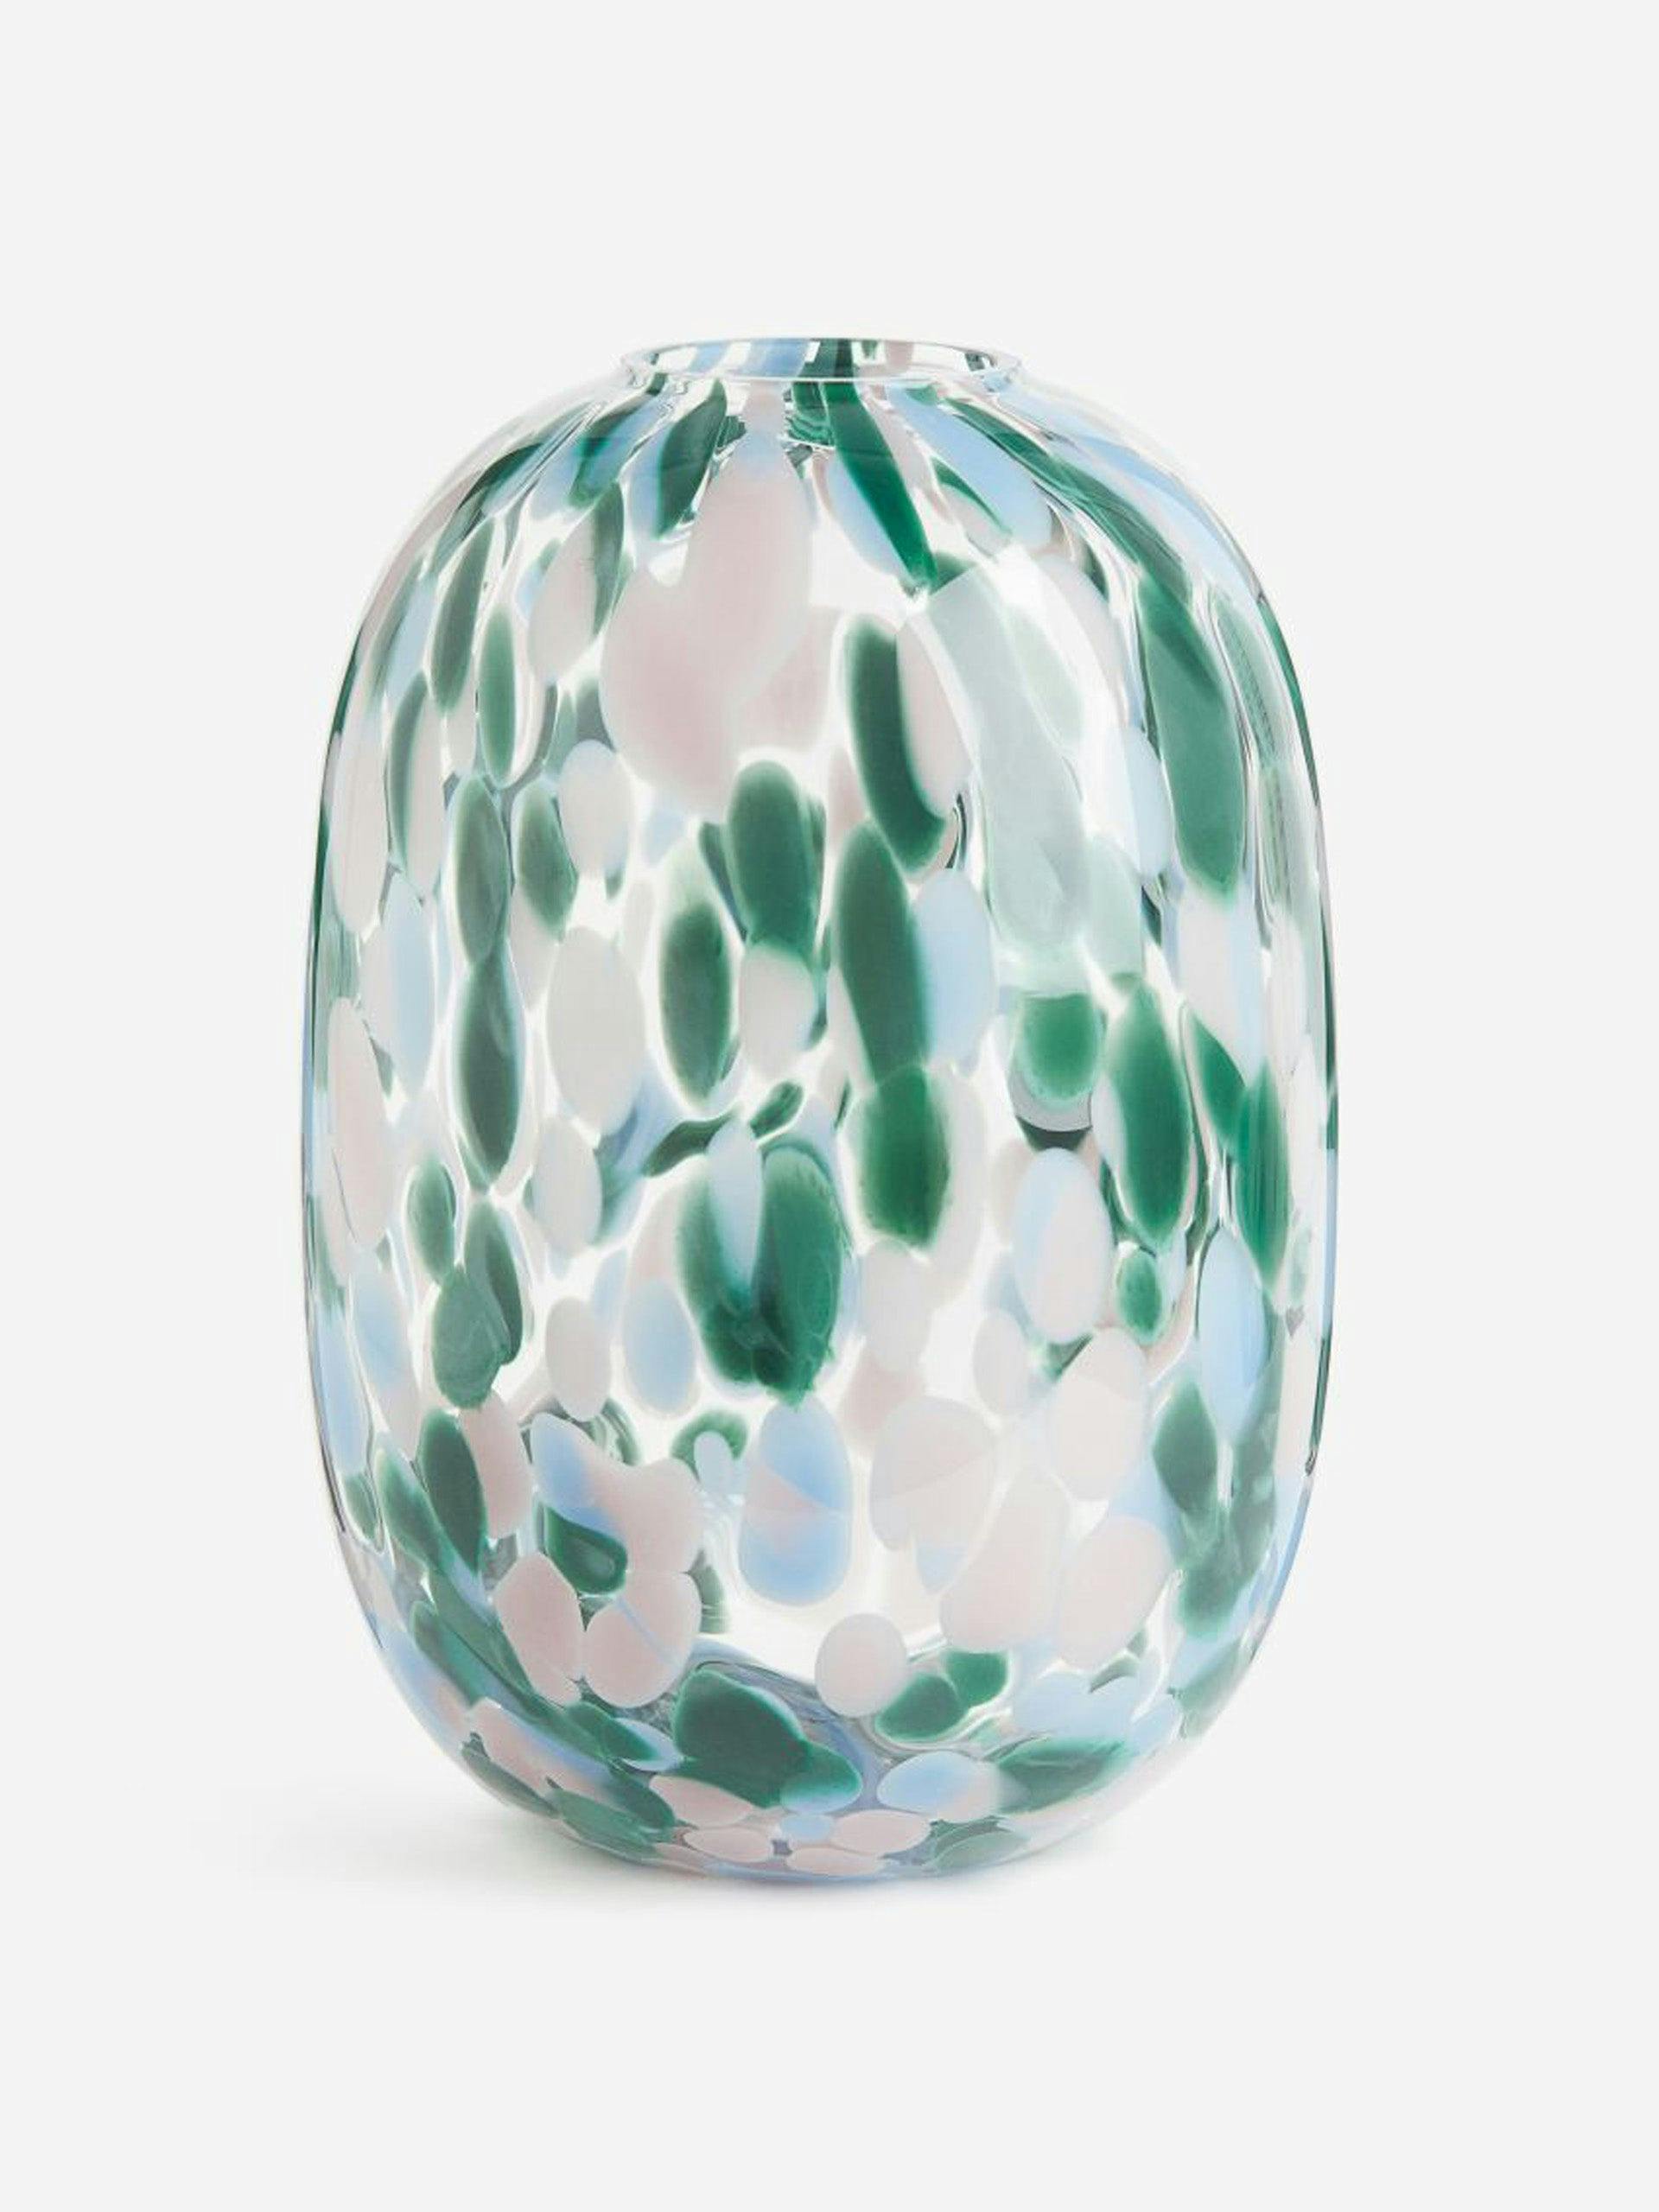 Patterned large glass vase